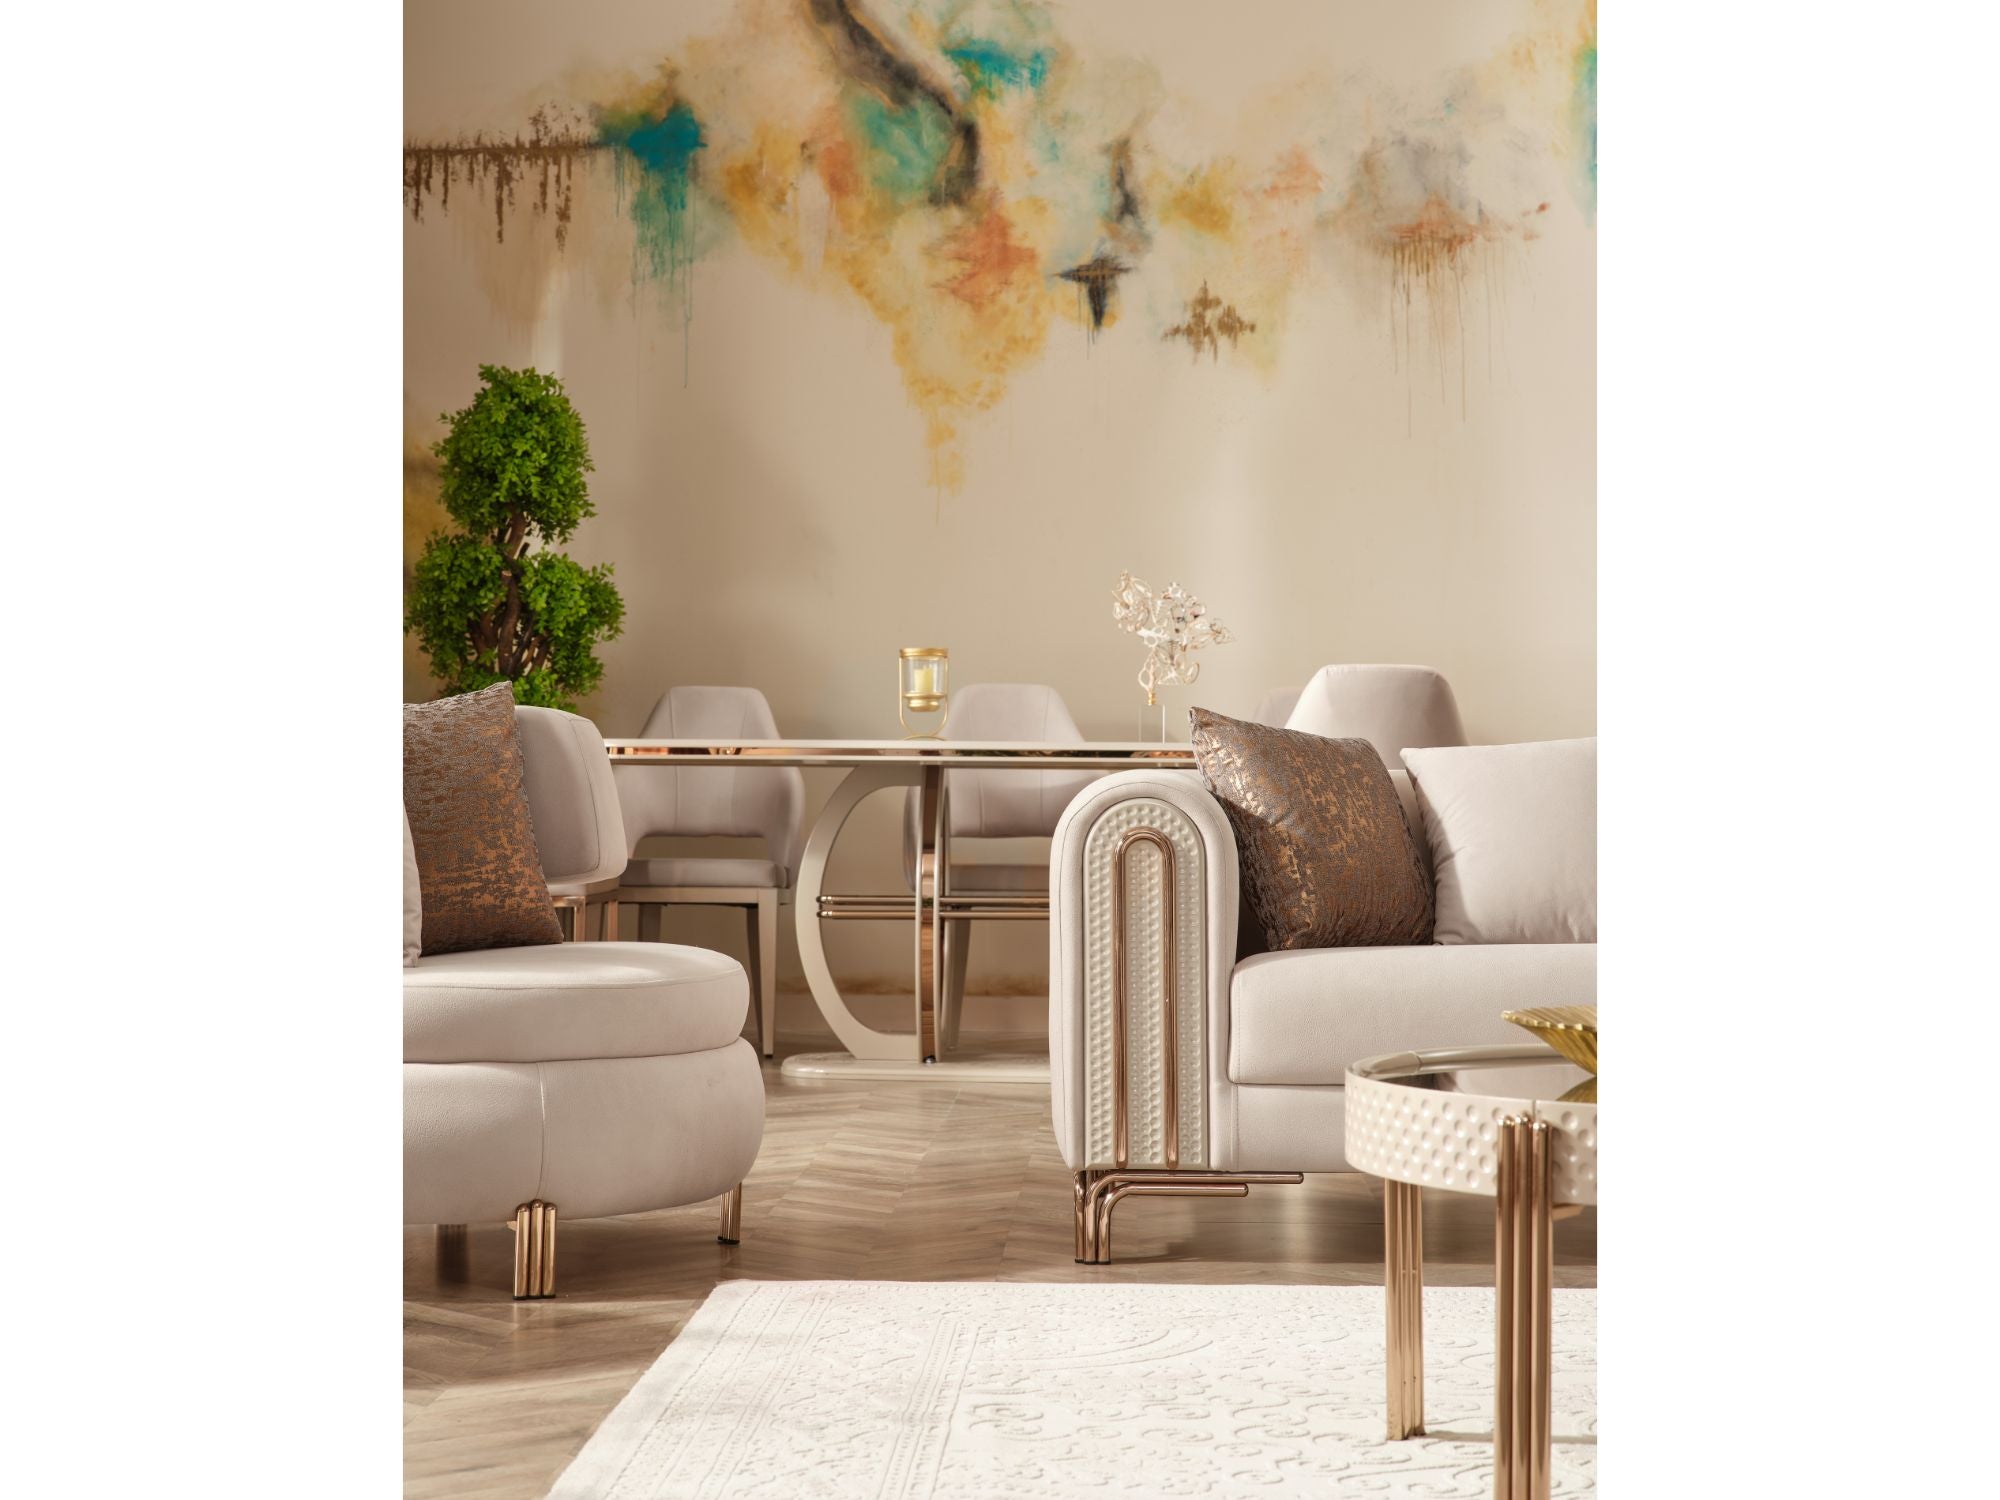 Paris Stationary Livingroom (2 Sofa & 2 Chair) Cream